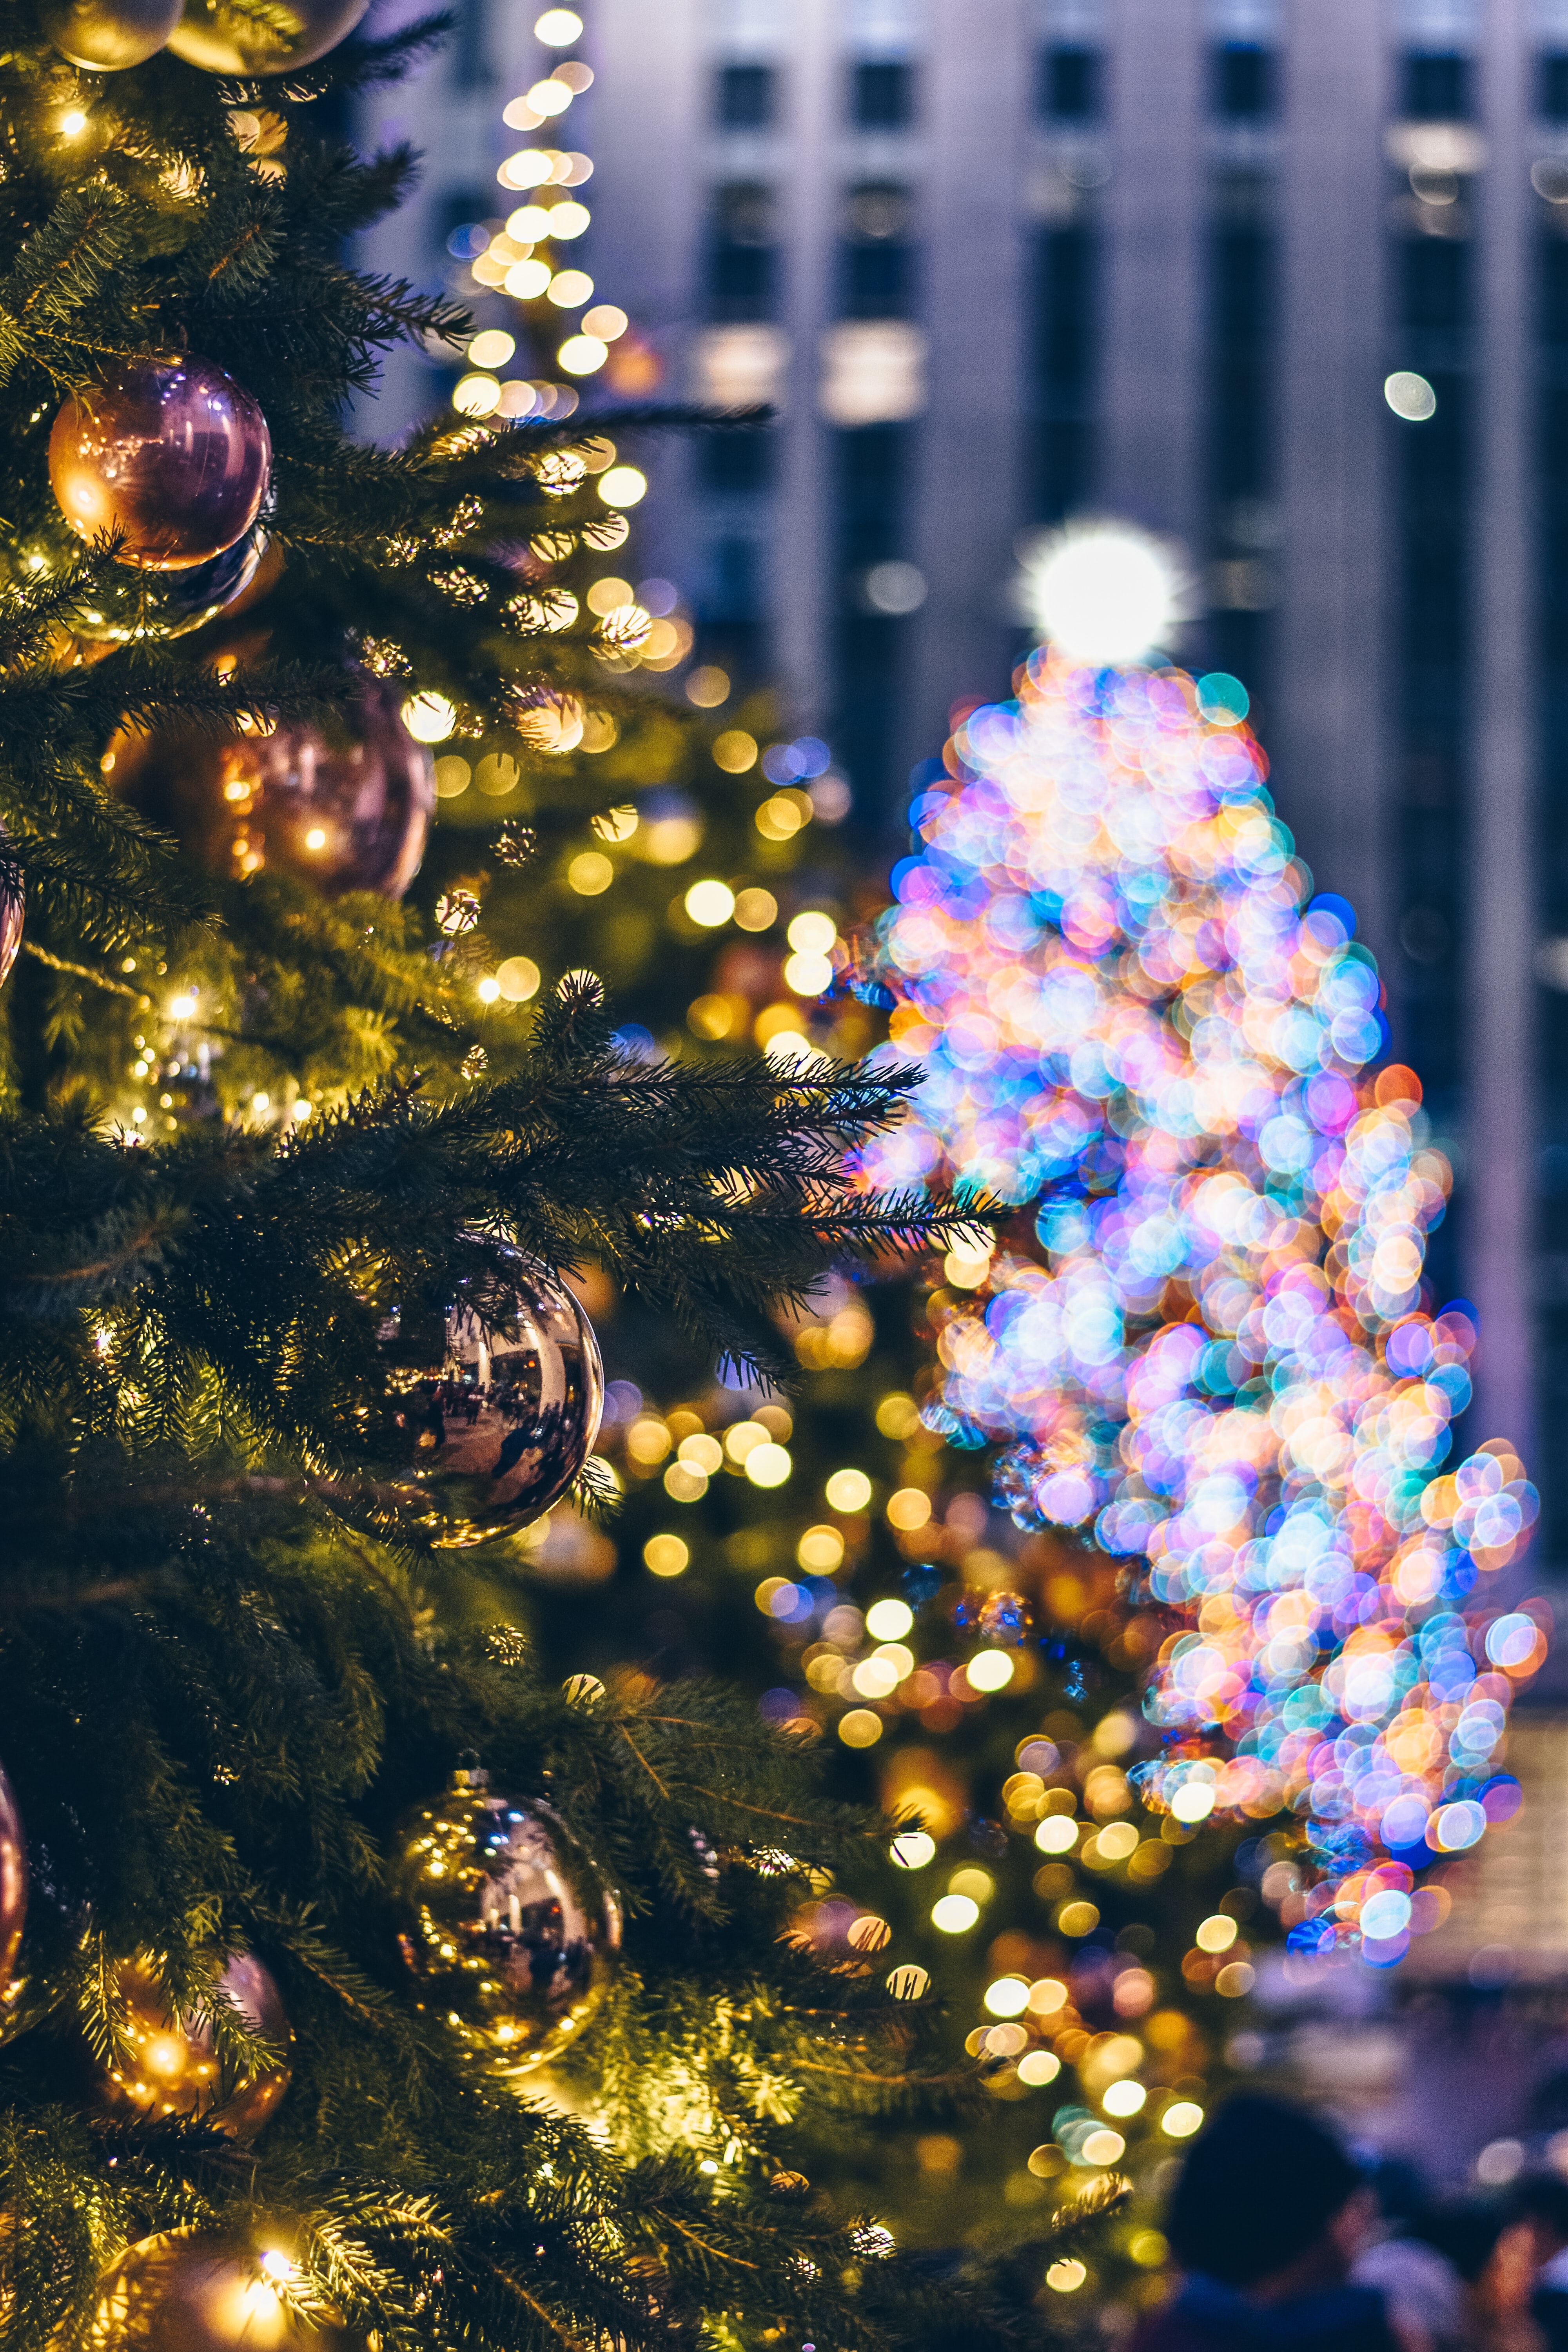 Cây thông đẹp là tâm điểm thu hút mọi ánh nhìn trong mùa Giáng sinh. Hãy giữ mắt mở để xem qua những cây thông đẹp nhất, độc đáo và ấn tượng nhất trong hình ảnh này và cùng cảm nhận không khí lễ hội đong đầy.